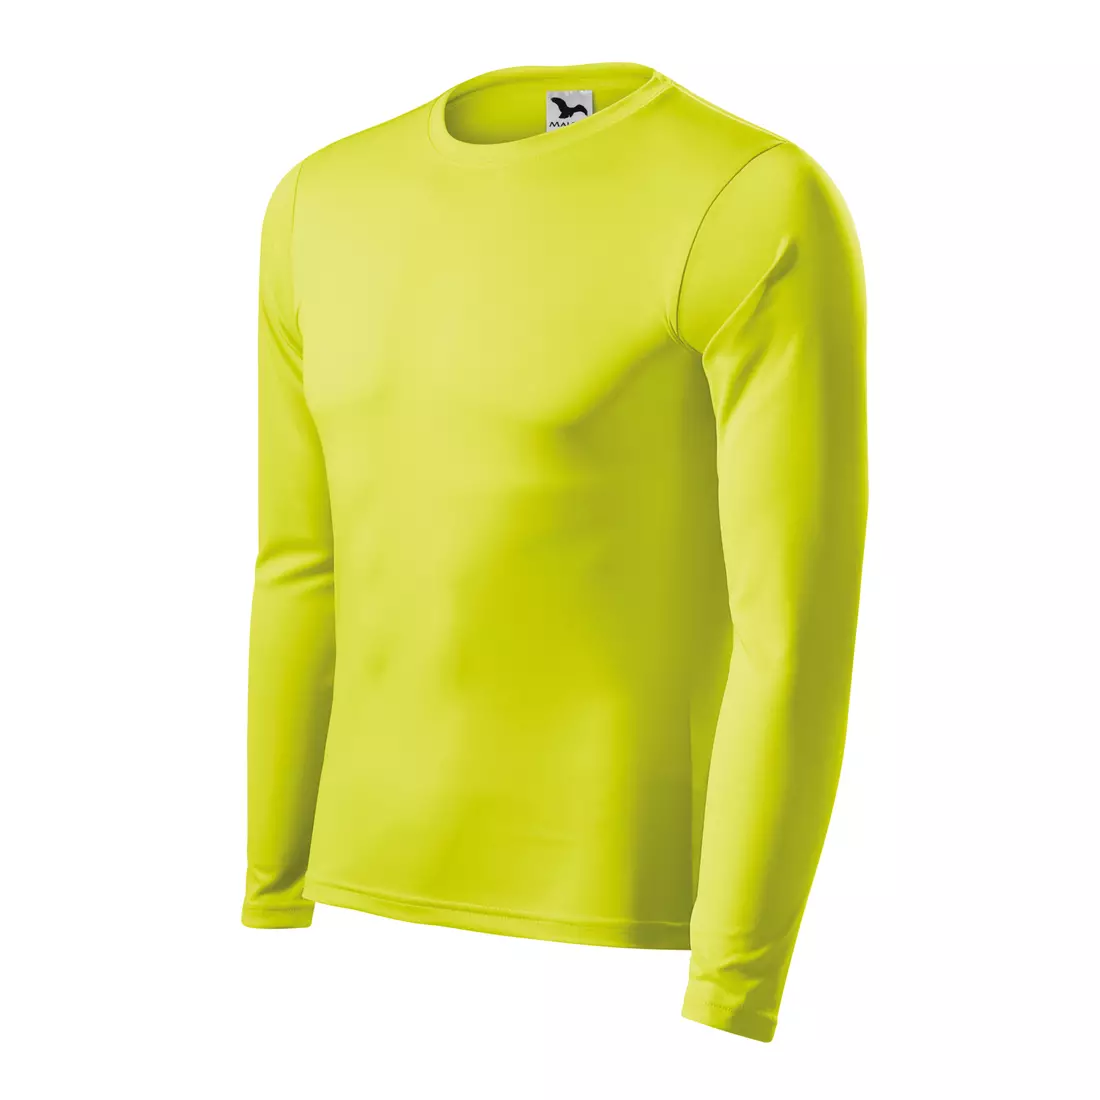 MALFINI PRIDE Tricou sport pentru bărbați cu mâneci lungi, galben neon 1689012